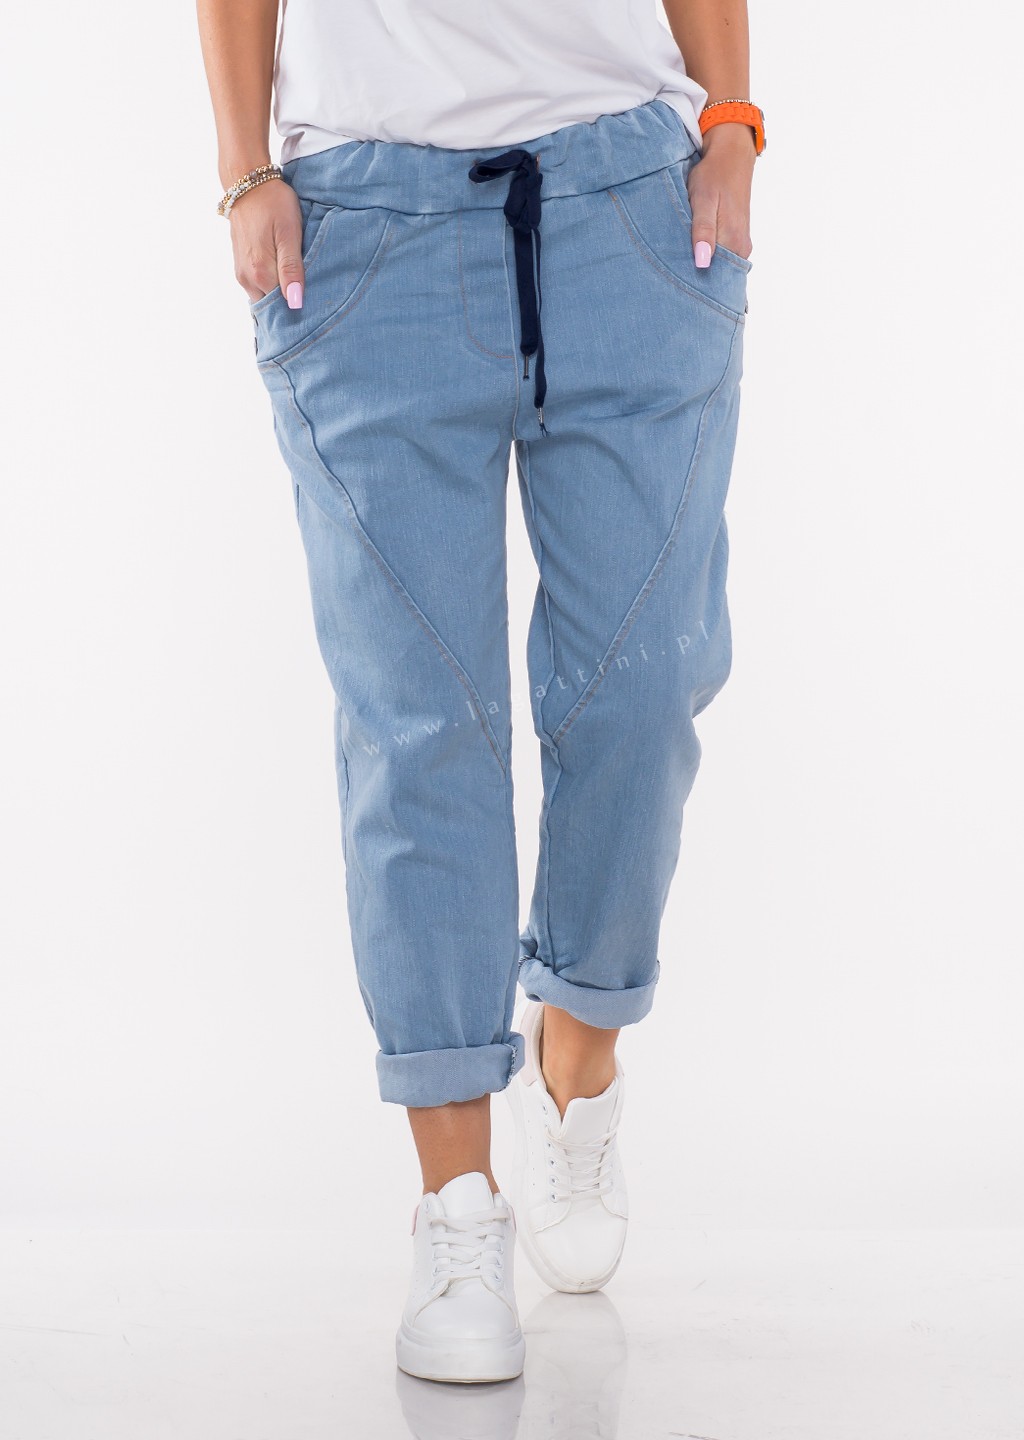 Włoskie jeansy BOYFRIEND jasny jeans